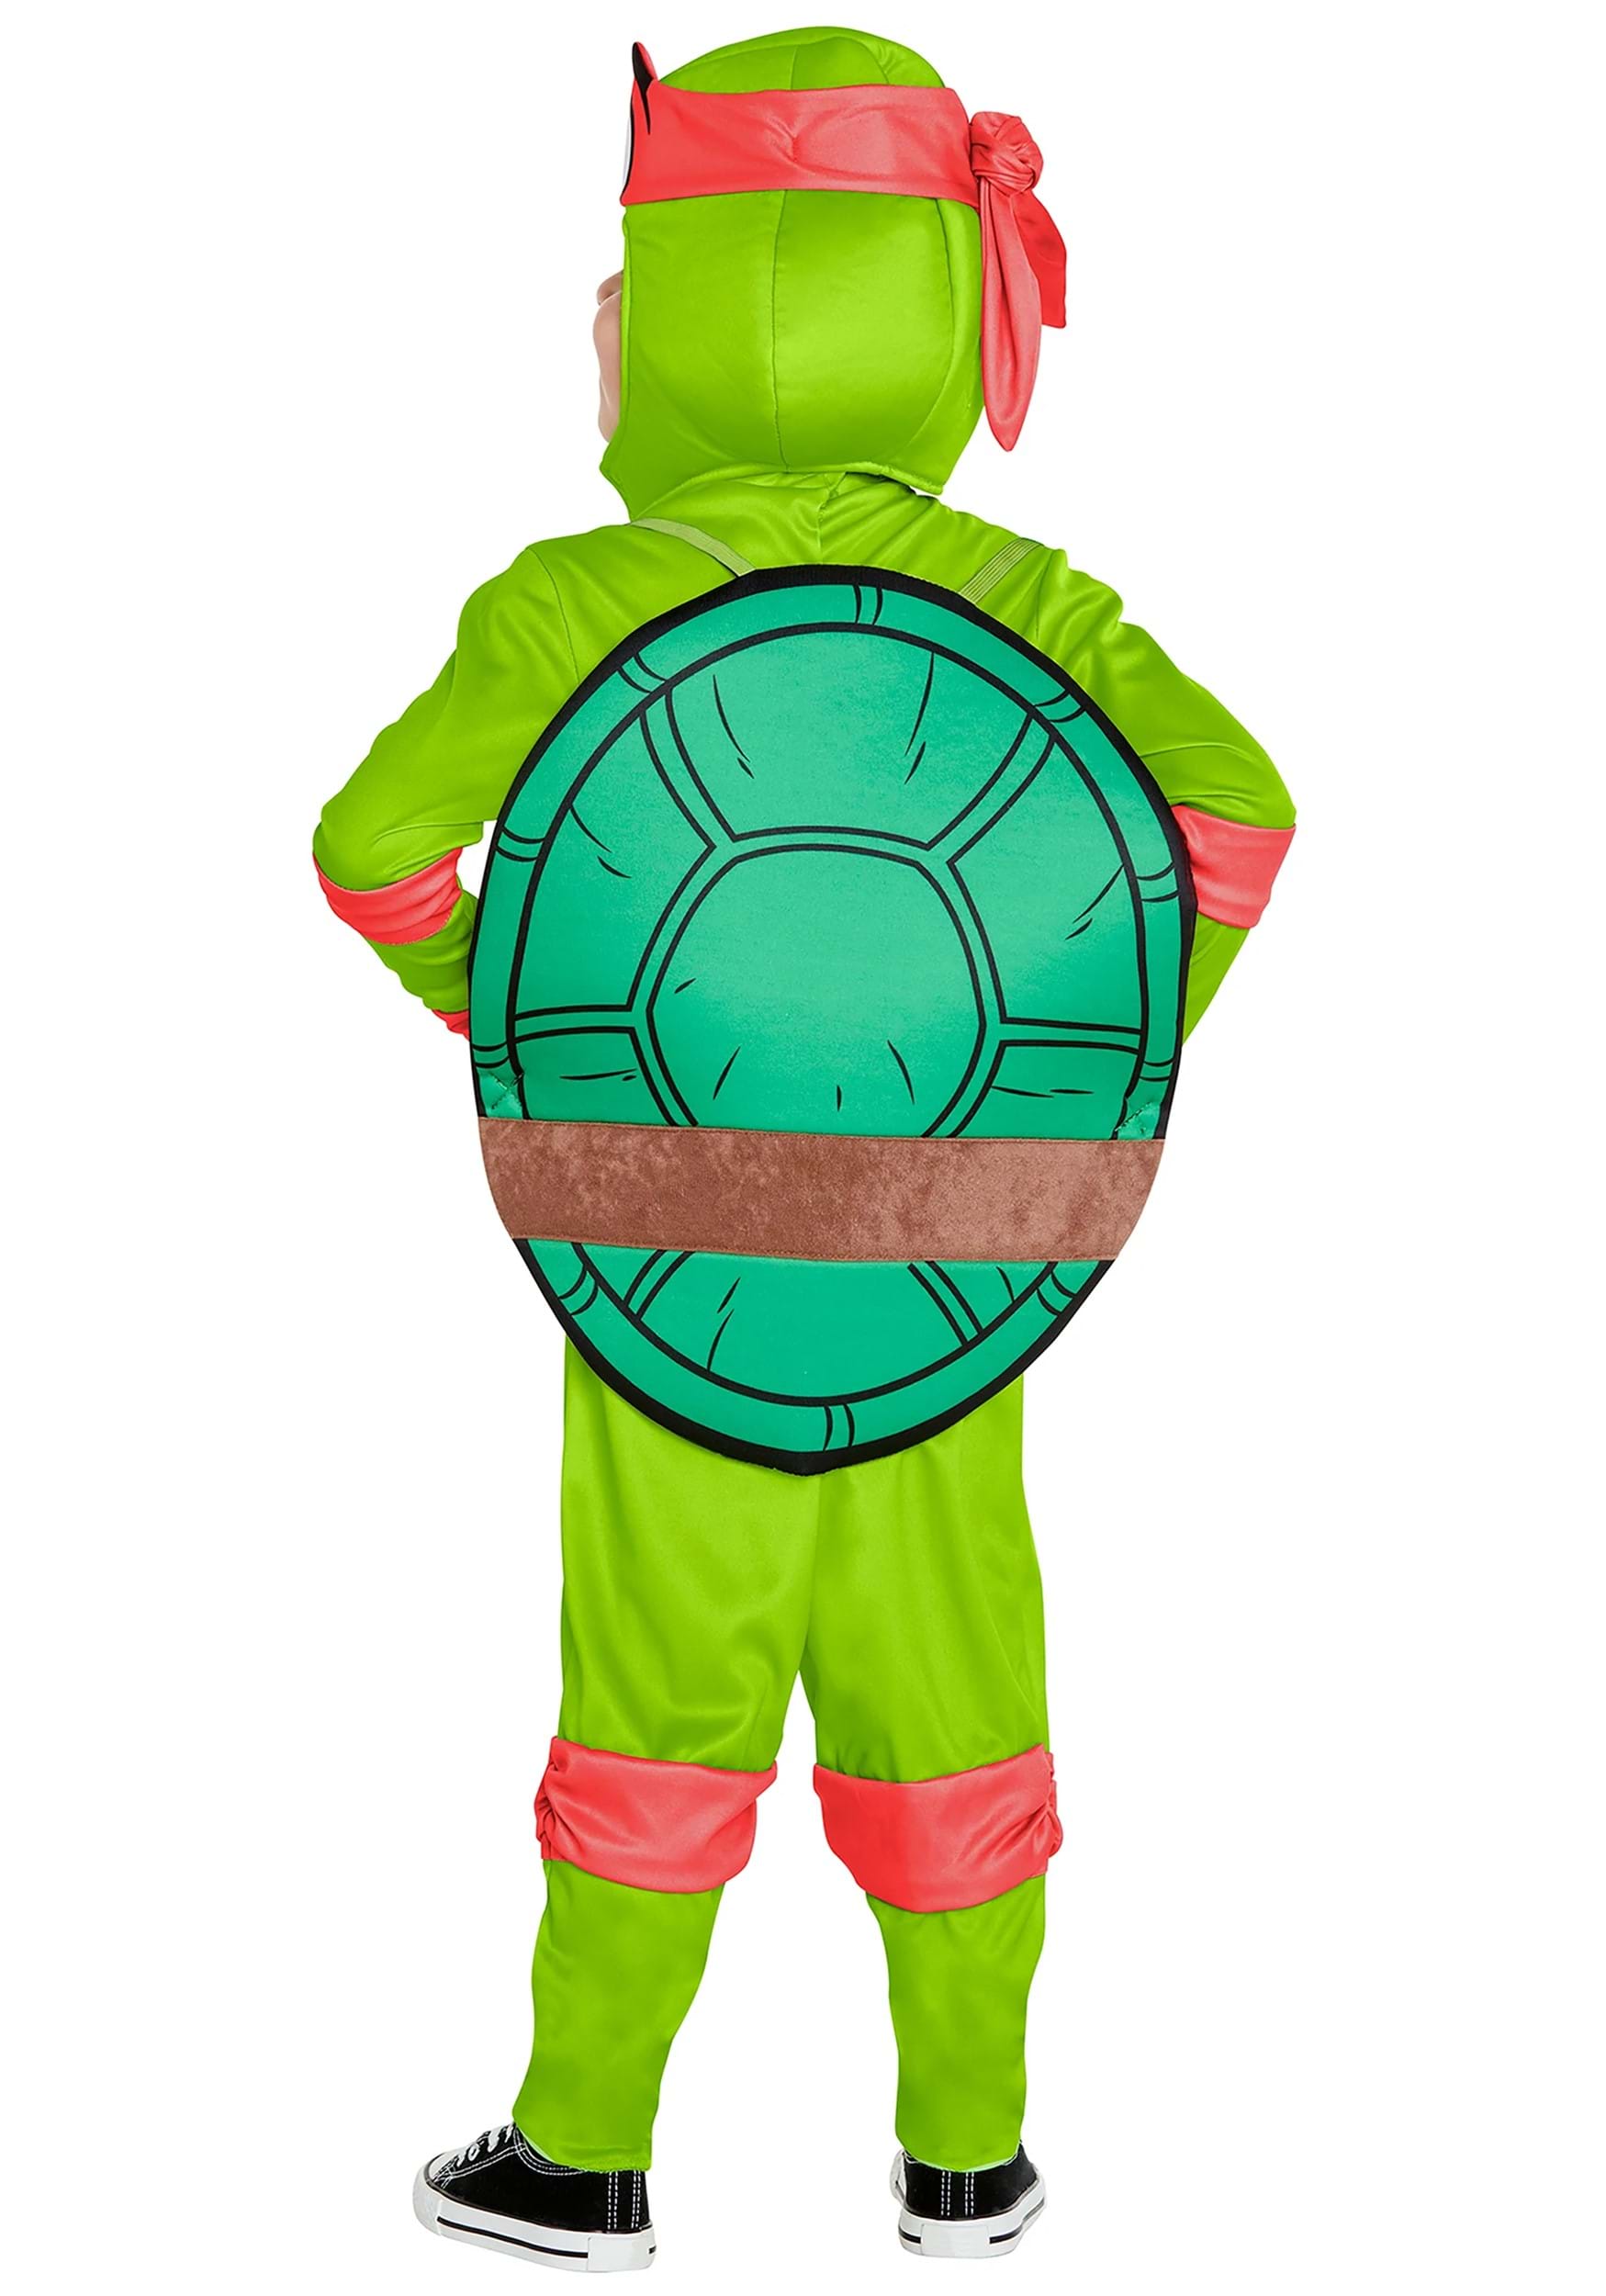 https://images.fun.com/products/85455/2-1-232821/kids-teenage-mutant-ninja-turtles-raphael-costume-alt-1.jpg